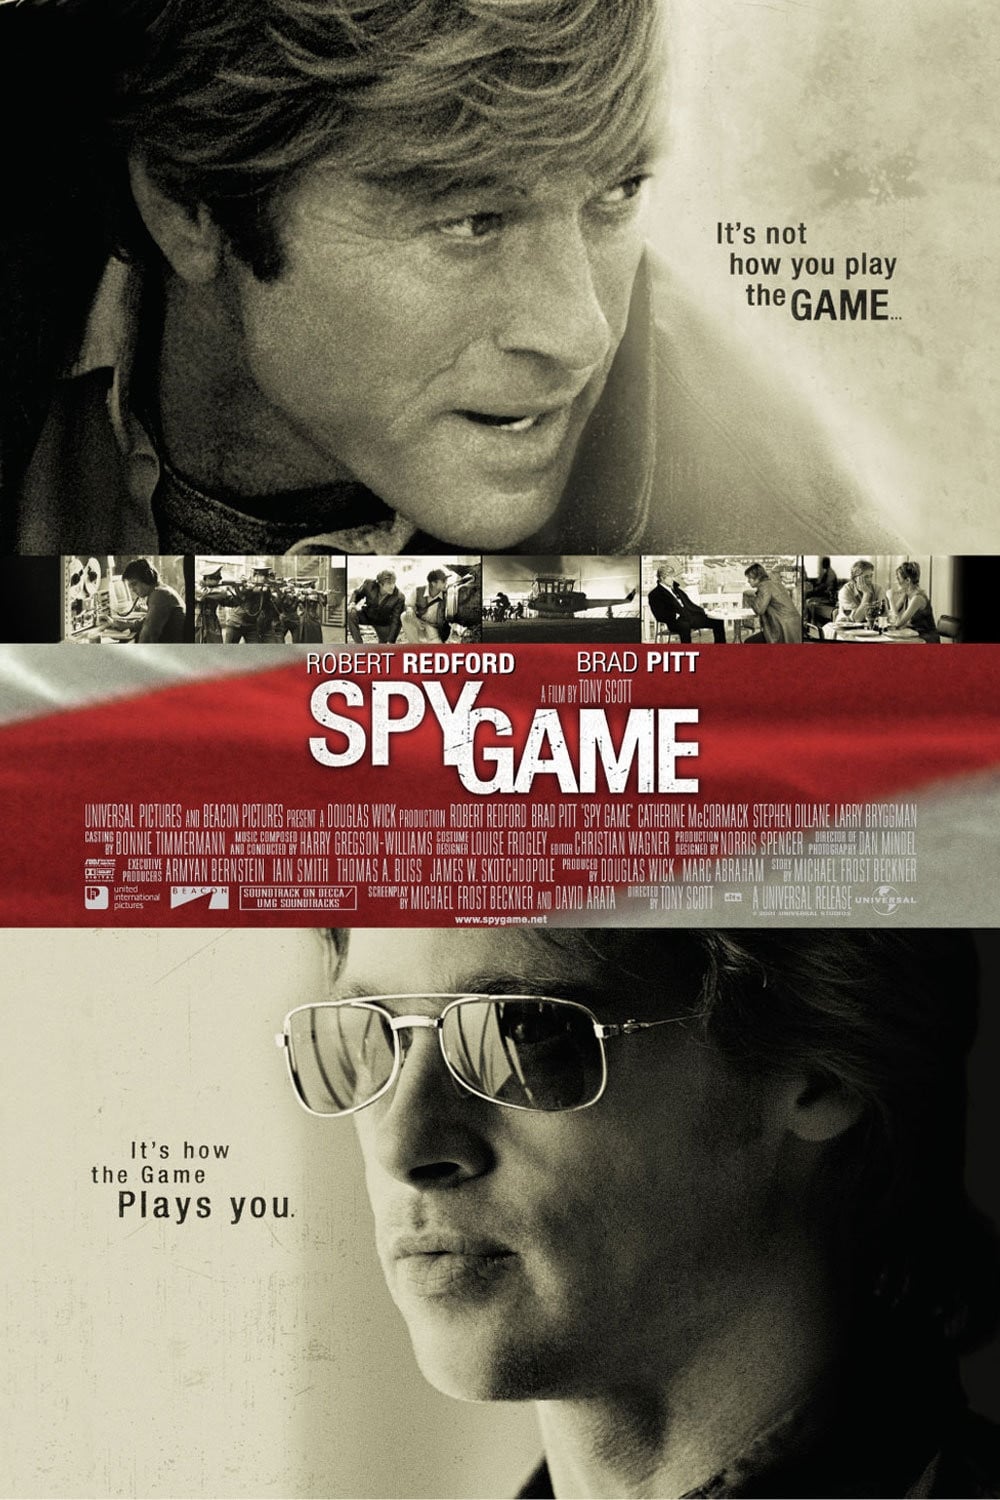 EN - Spy Game (2001) BRAD PITT